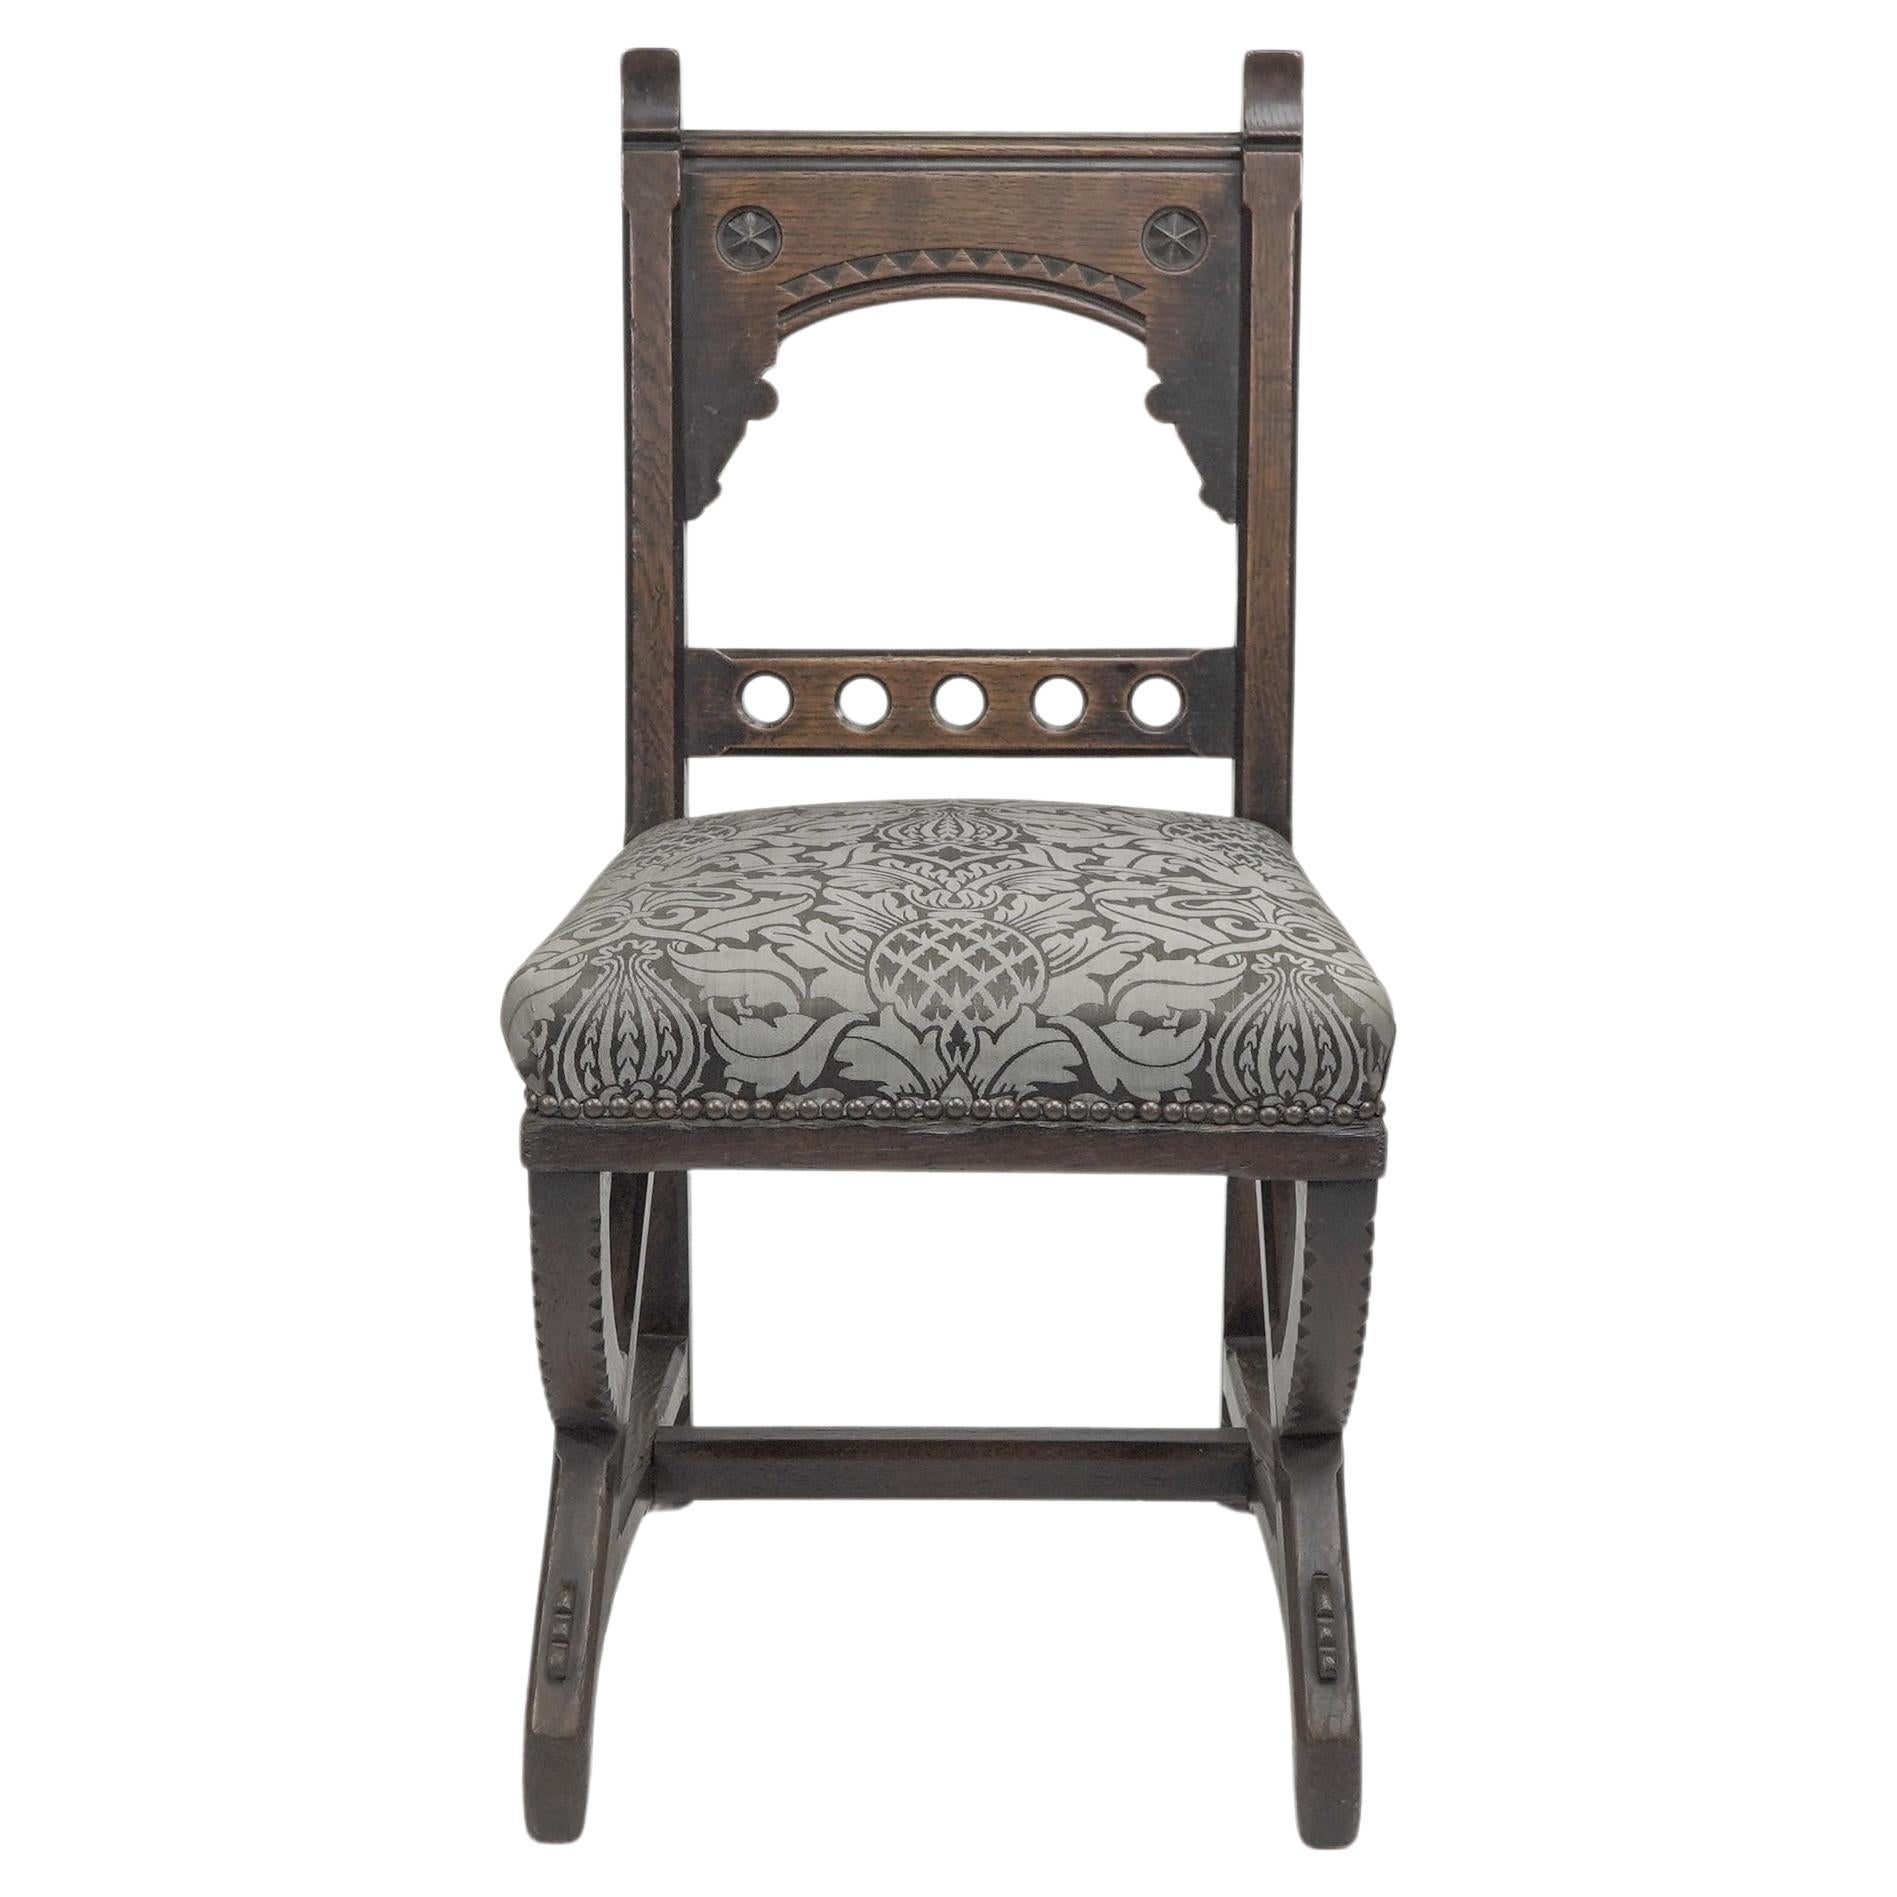 Charles Bevan (attribué), une chaise d'appoint en chêne de style néo-gothique, avec des détails arrondis sur la barre supérieure du dossier, flanquée de montants façonnés avec des bandes en zigzag sculptées et ébonisées sur le dessus, et des détails